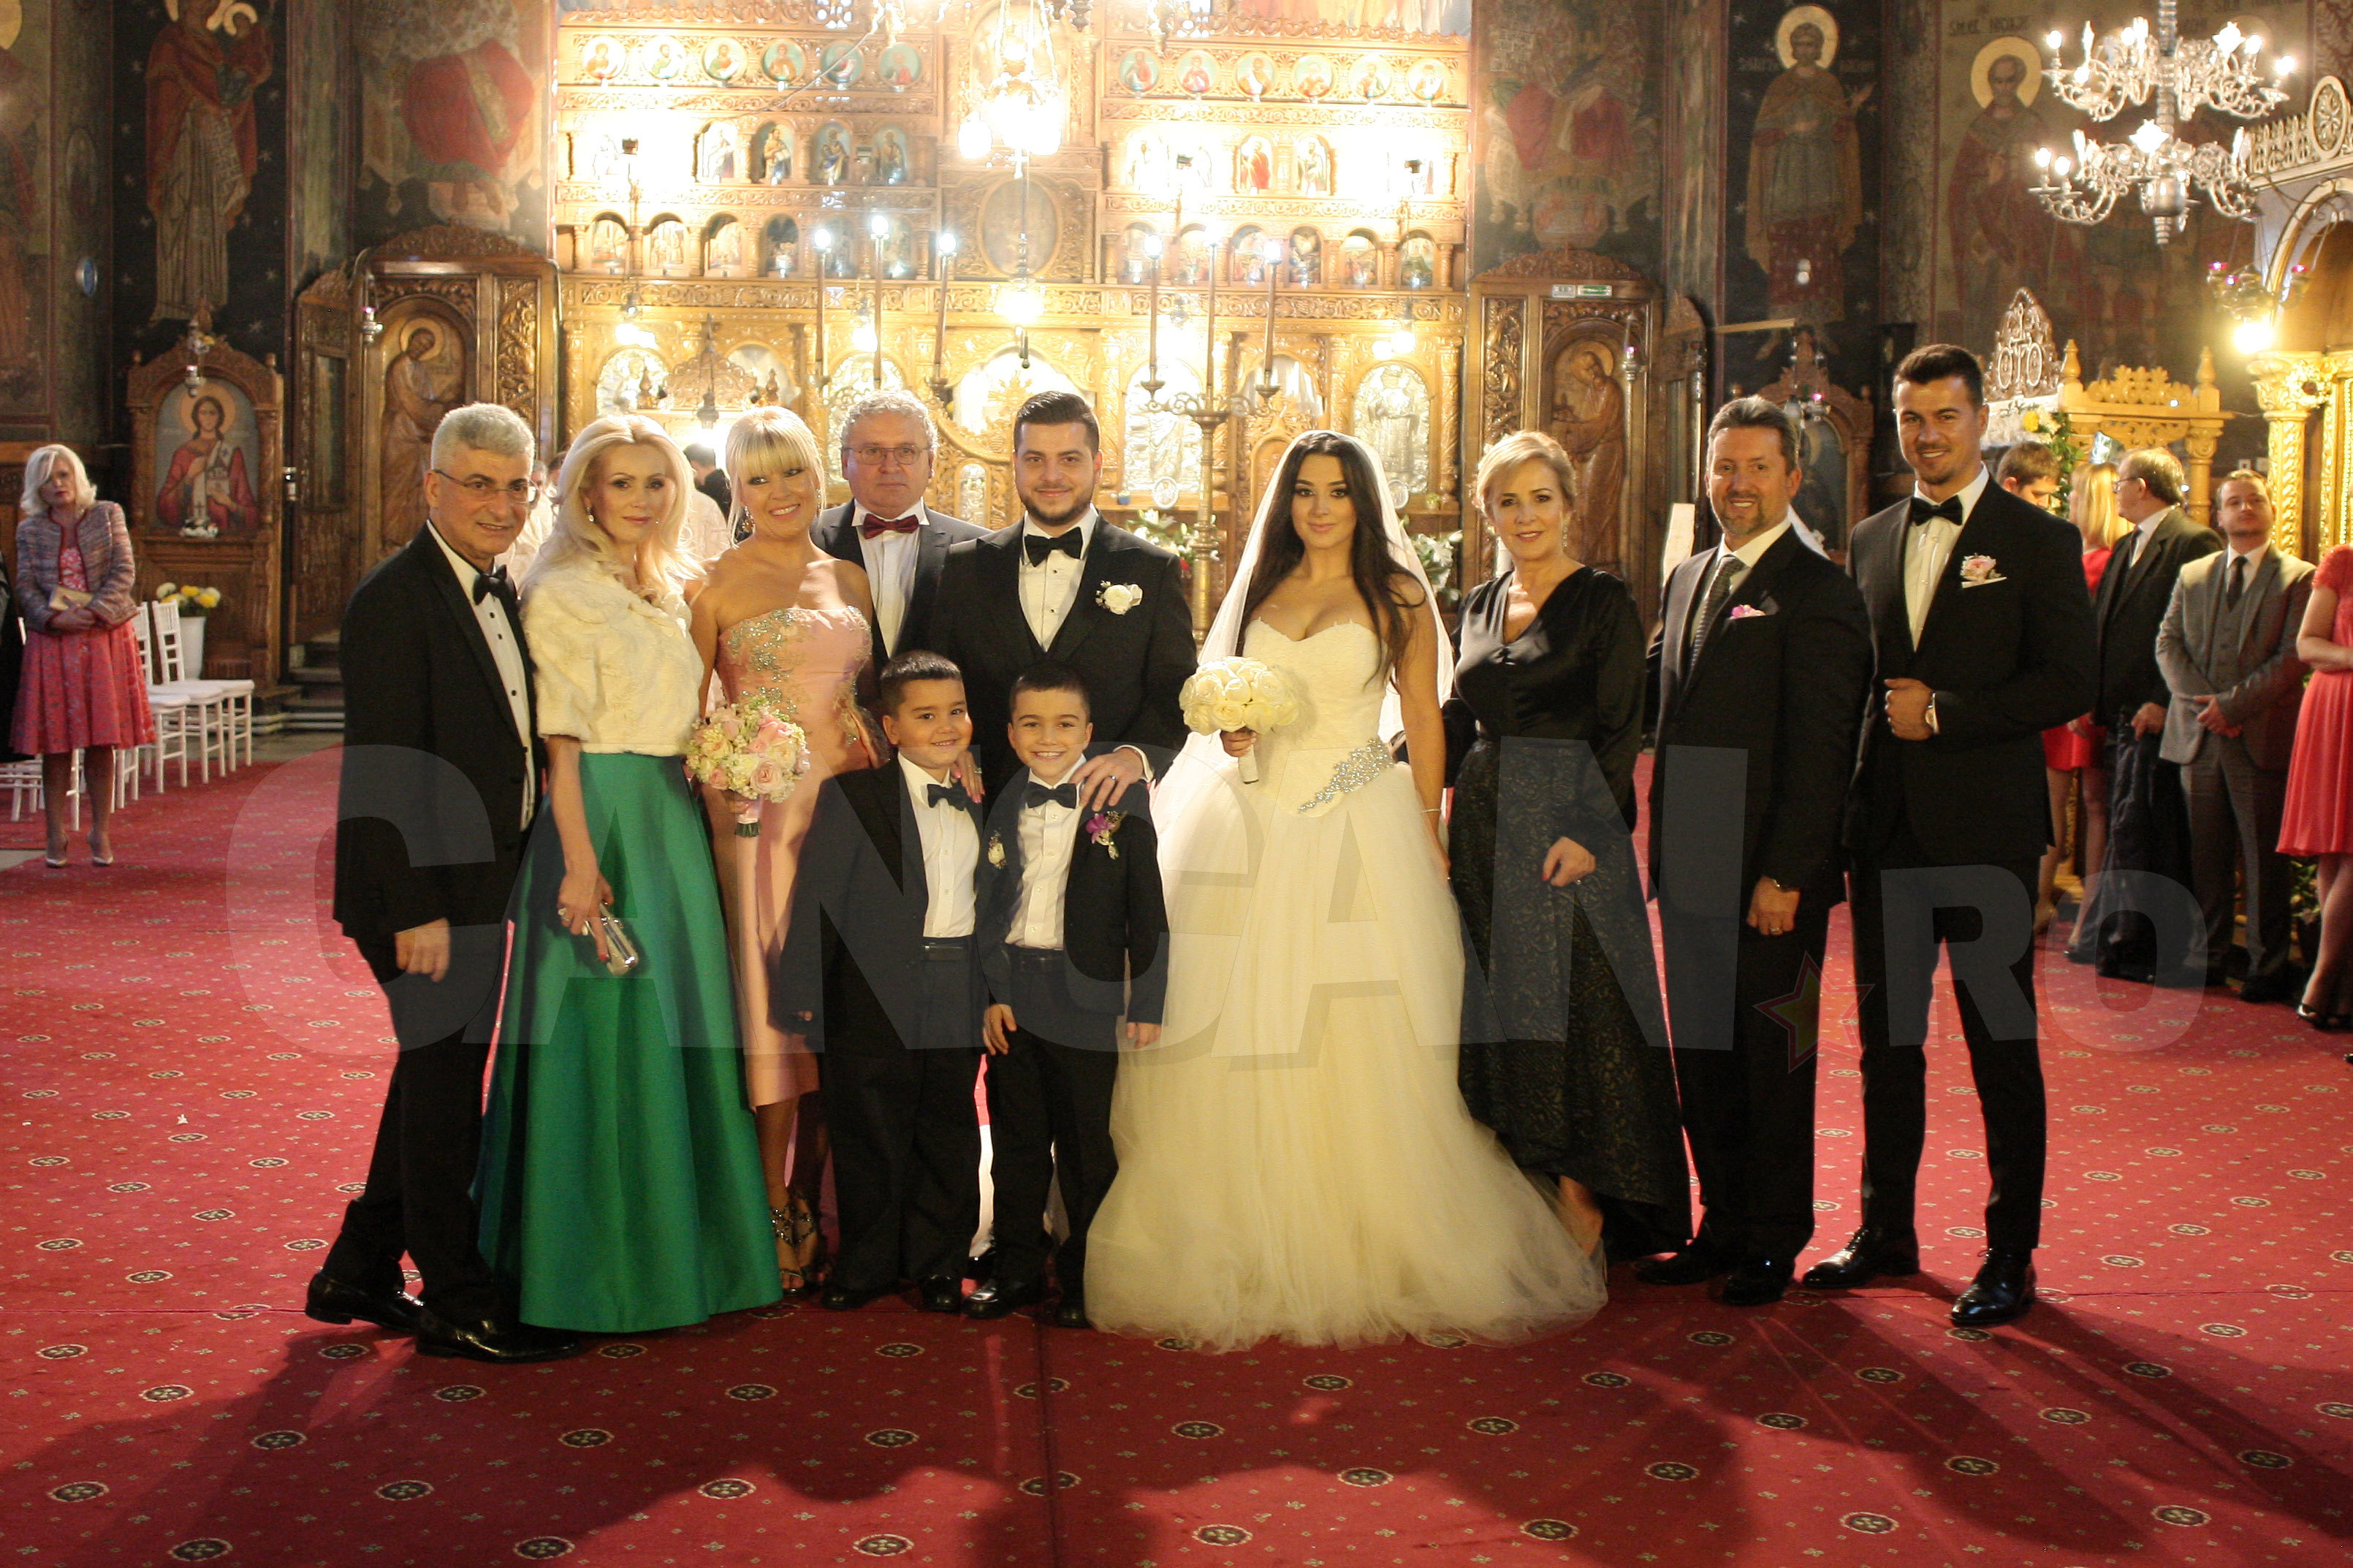 O familie fericită, în frunte cu socrul mare, Silviu Prigoană!